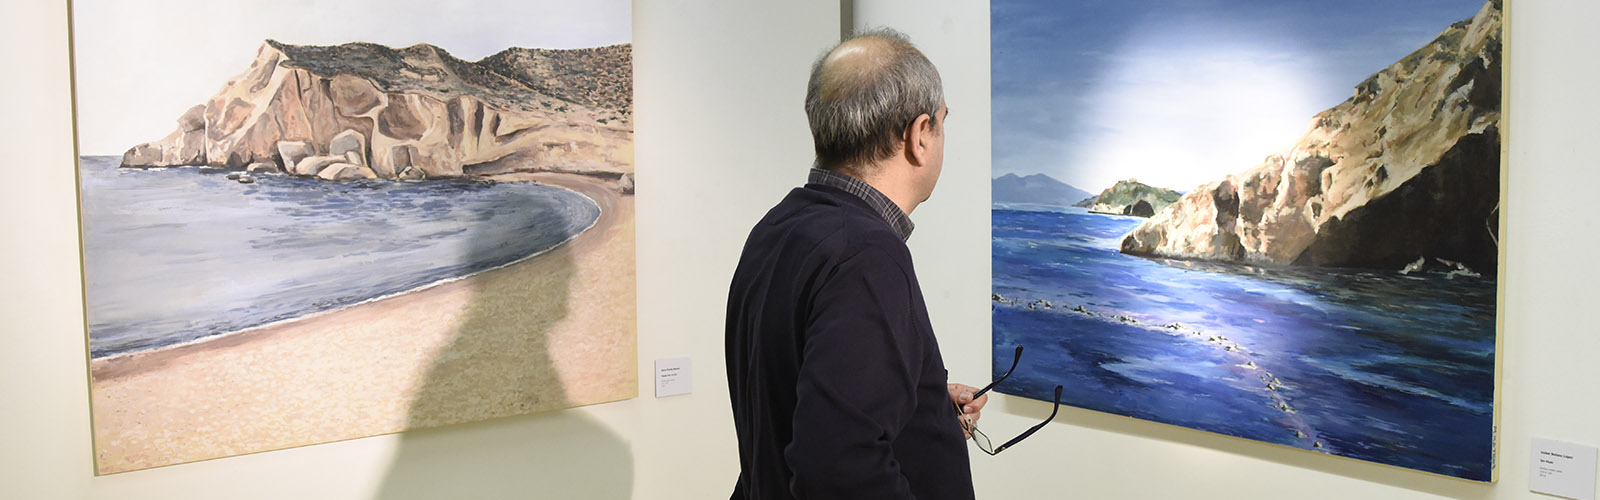 El paisaje protegido de Cuatro Calas de Águilas, protagonista de una exposición de pintura en la Universidad de Murcia